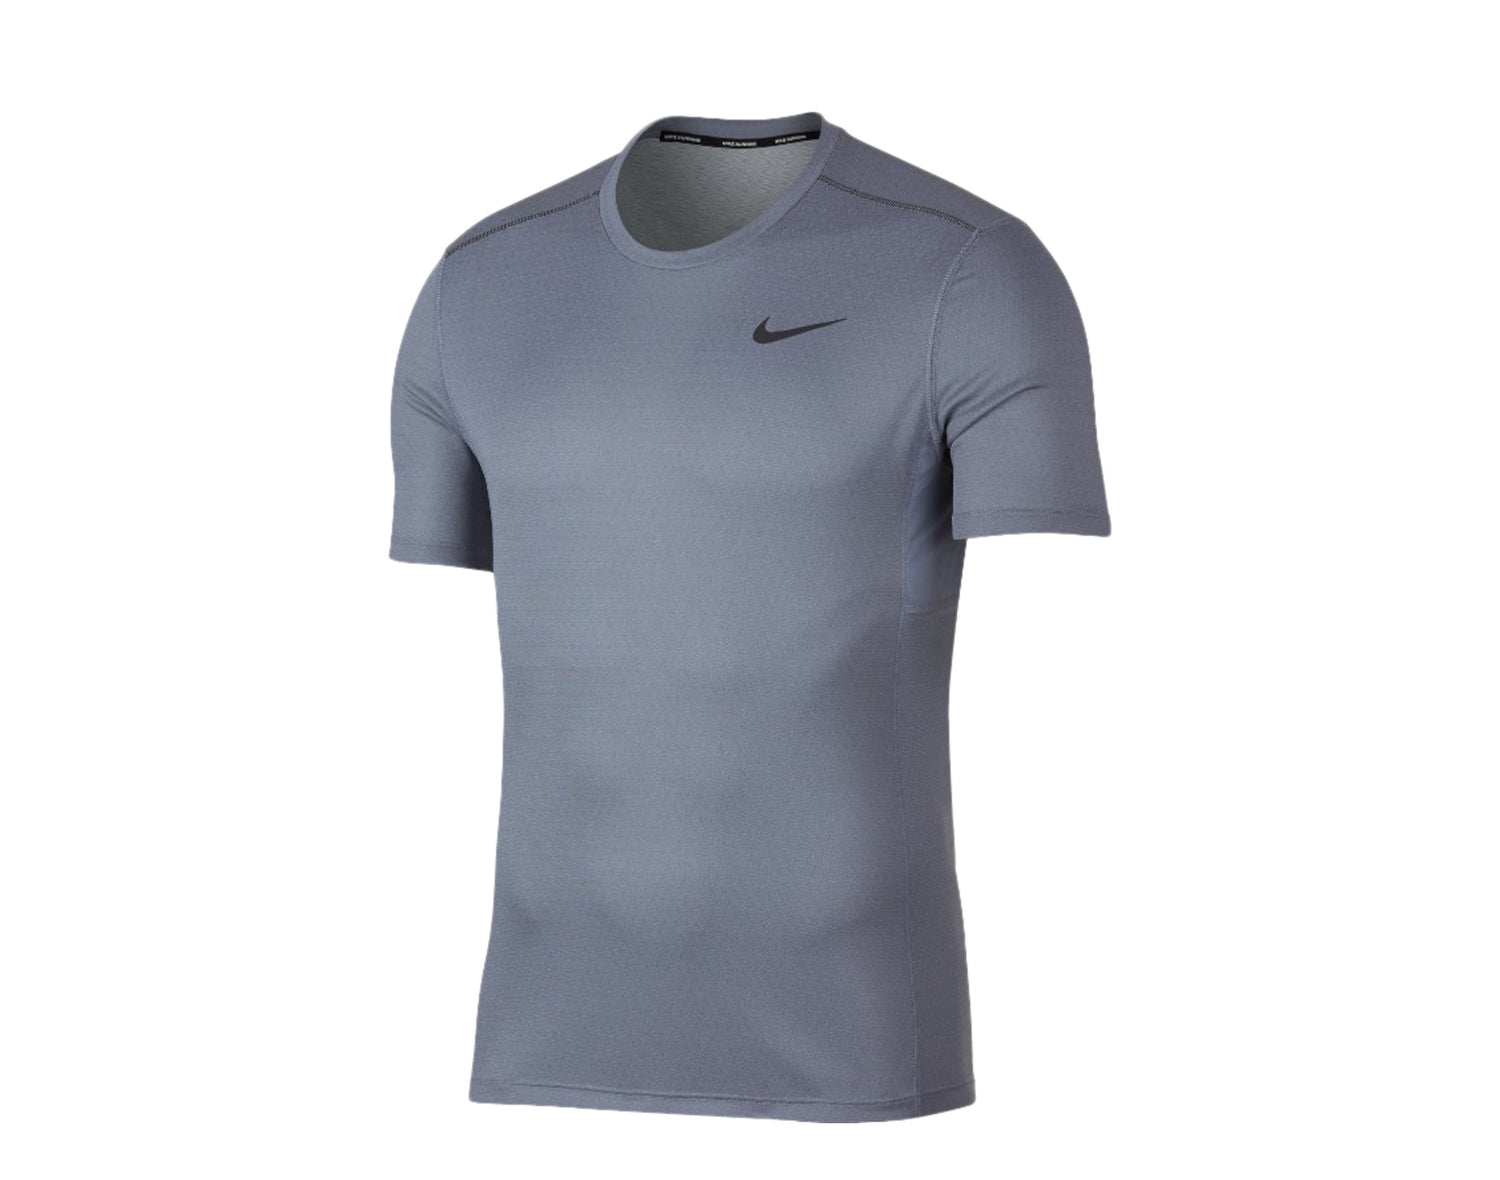 Nike - Men - Shirts & Tops